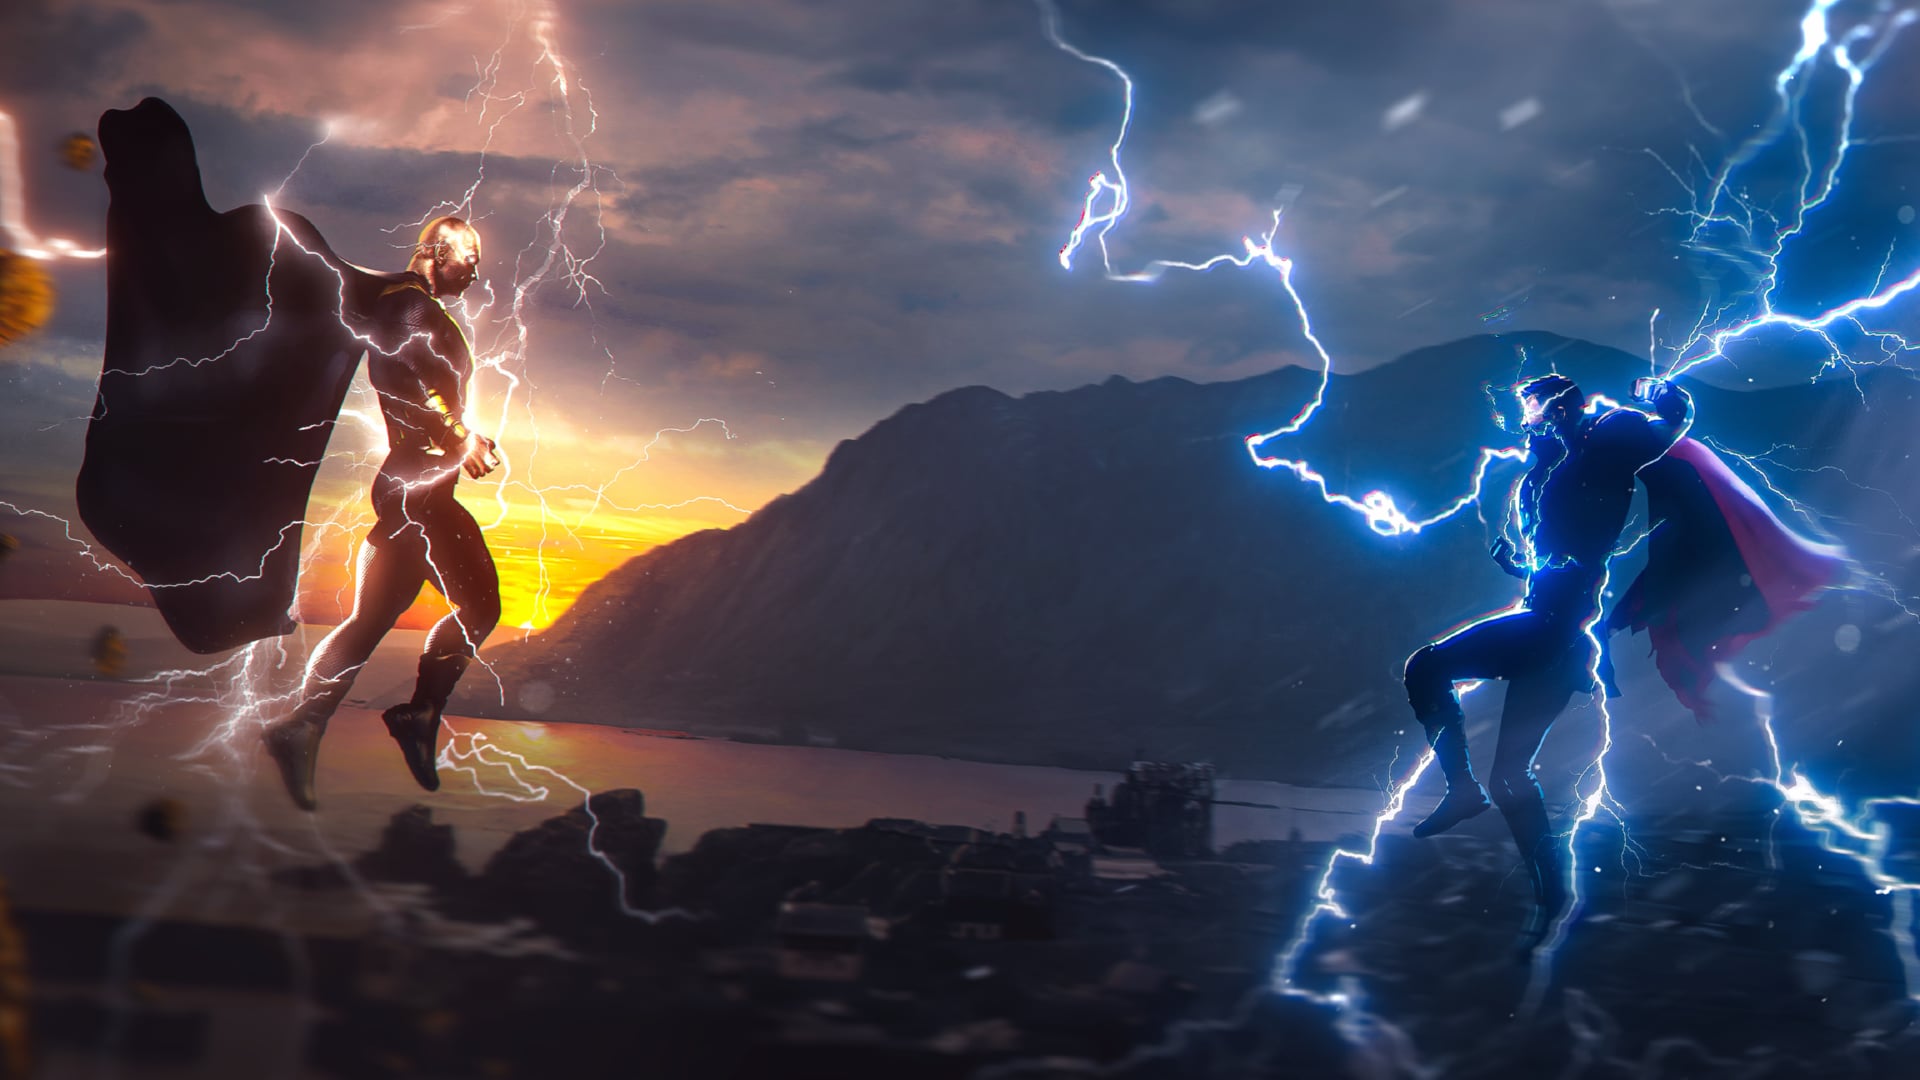 Black Adam vs Thor wallpapers HD quality